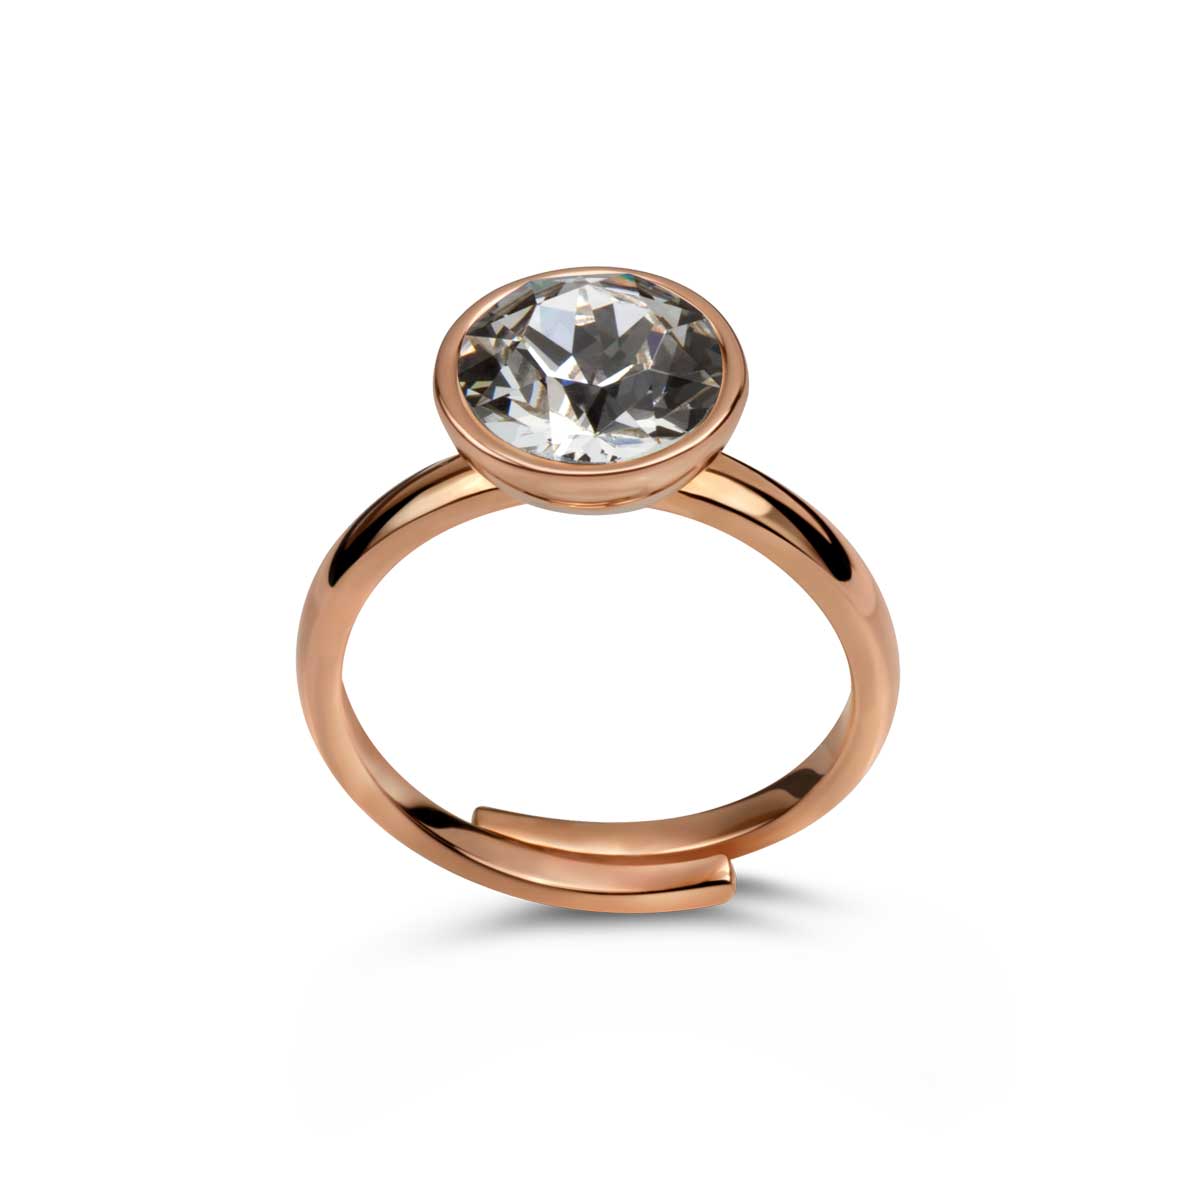 Ring 925 Silber Kristall Zirkonia verstellbar#oberflache_rosevergoldet